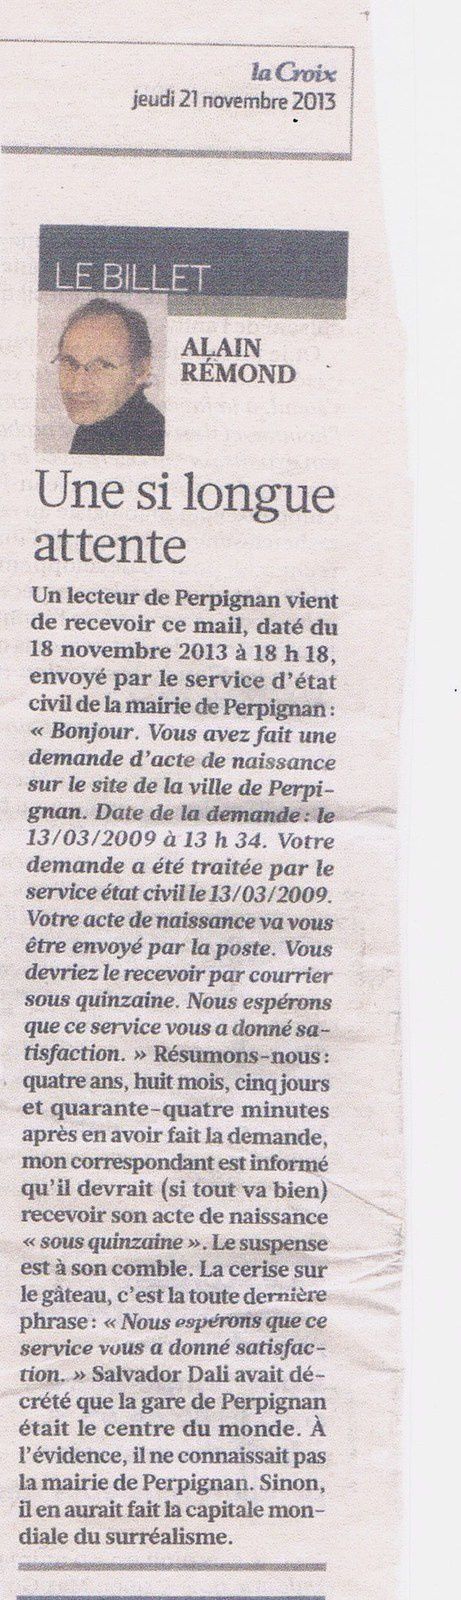 scan : La Croix / Le courrier de la Mayenne // photo : flora